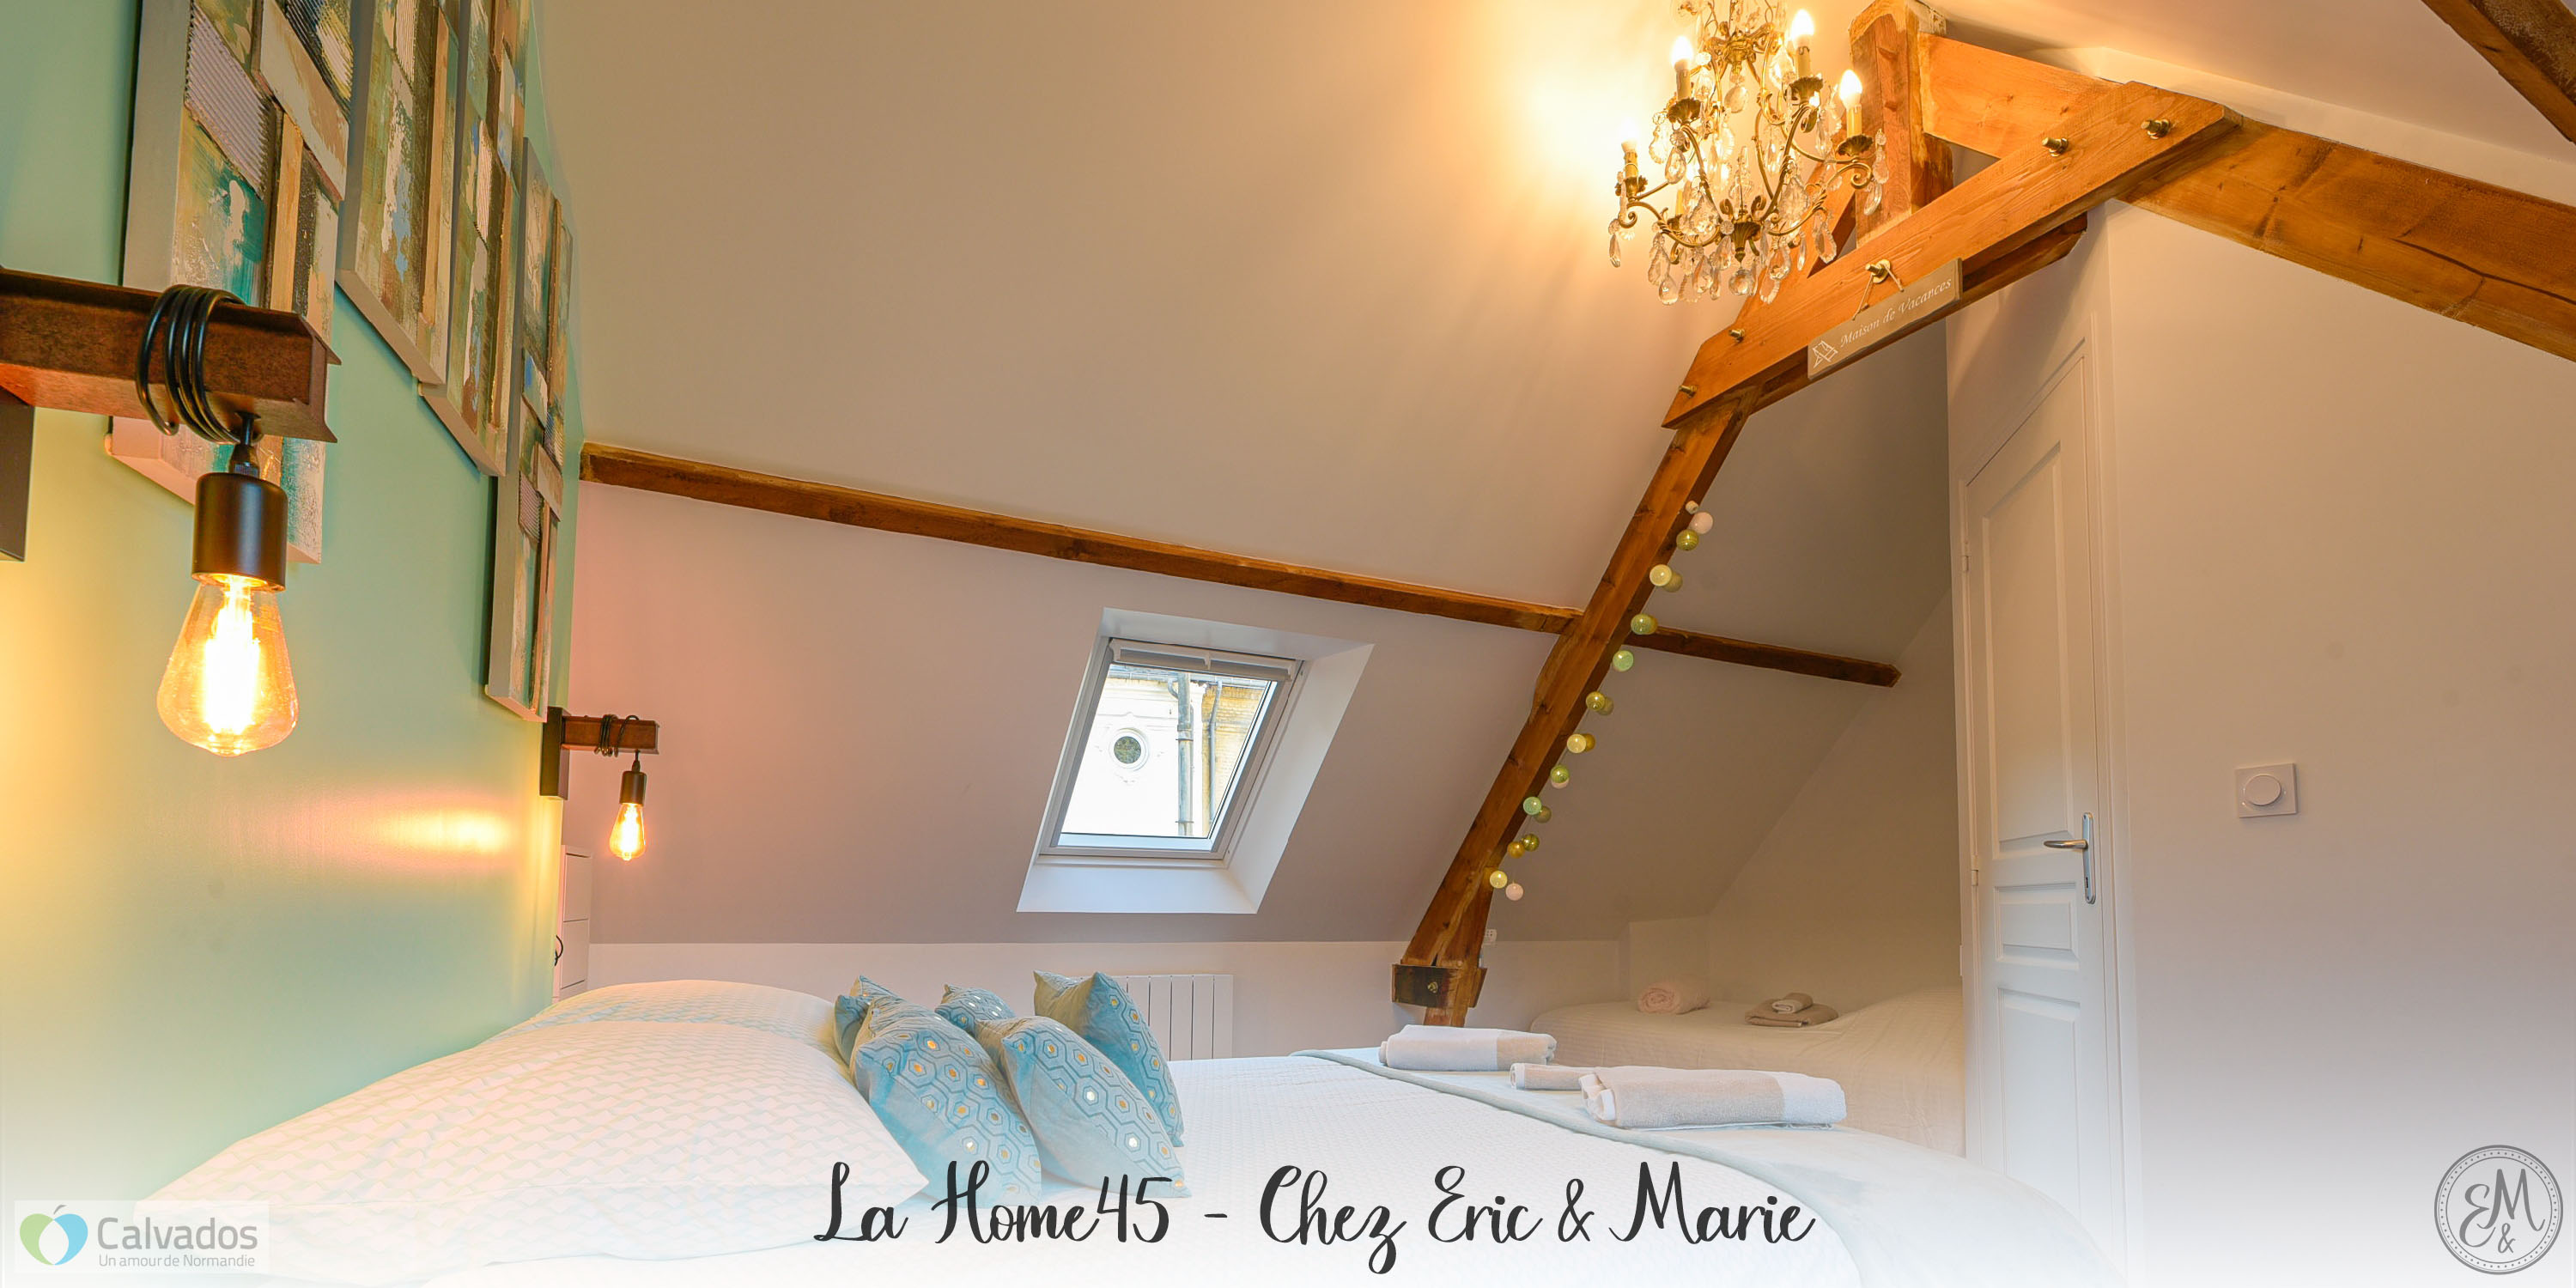 Les Maisons de Maje - Home 45 (VIT)  France Normandie Calvados Honfleur 14600